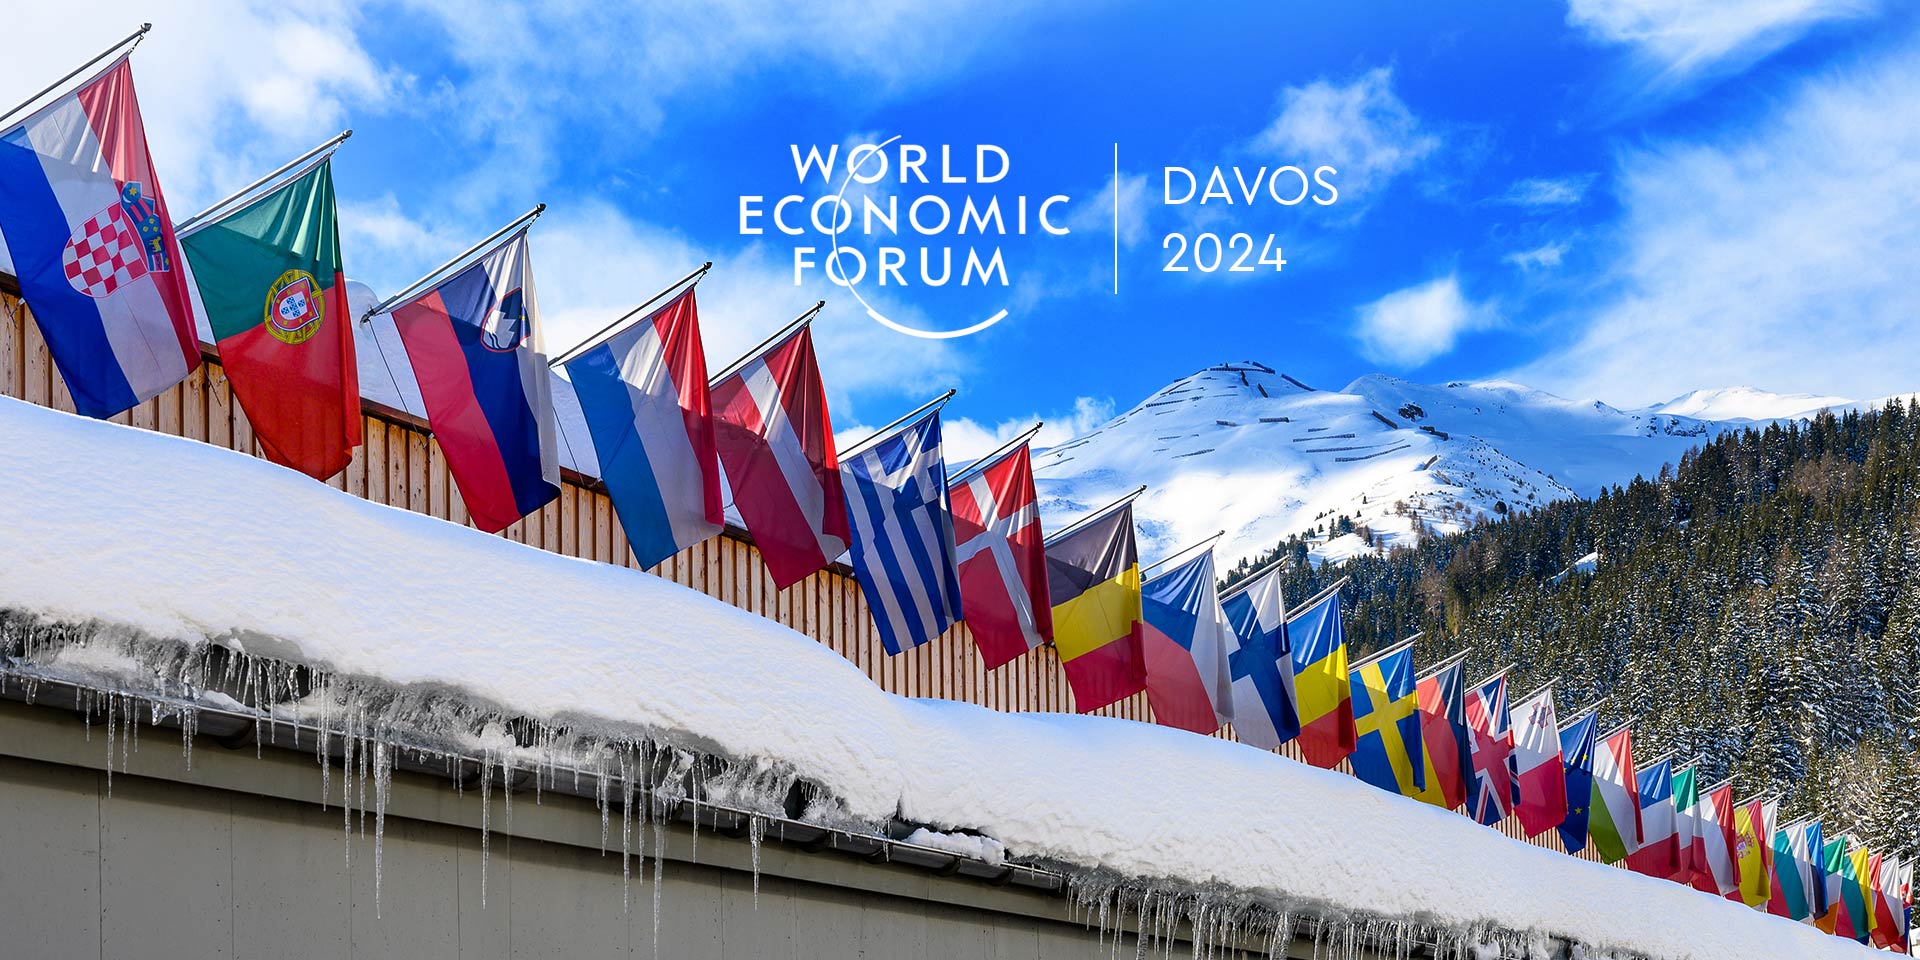 WORLD ECONOMIC FORUM: “Rebuilding Trust” - Davos 2024